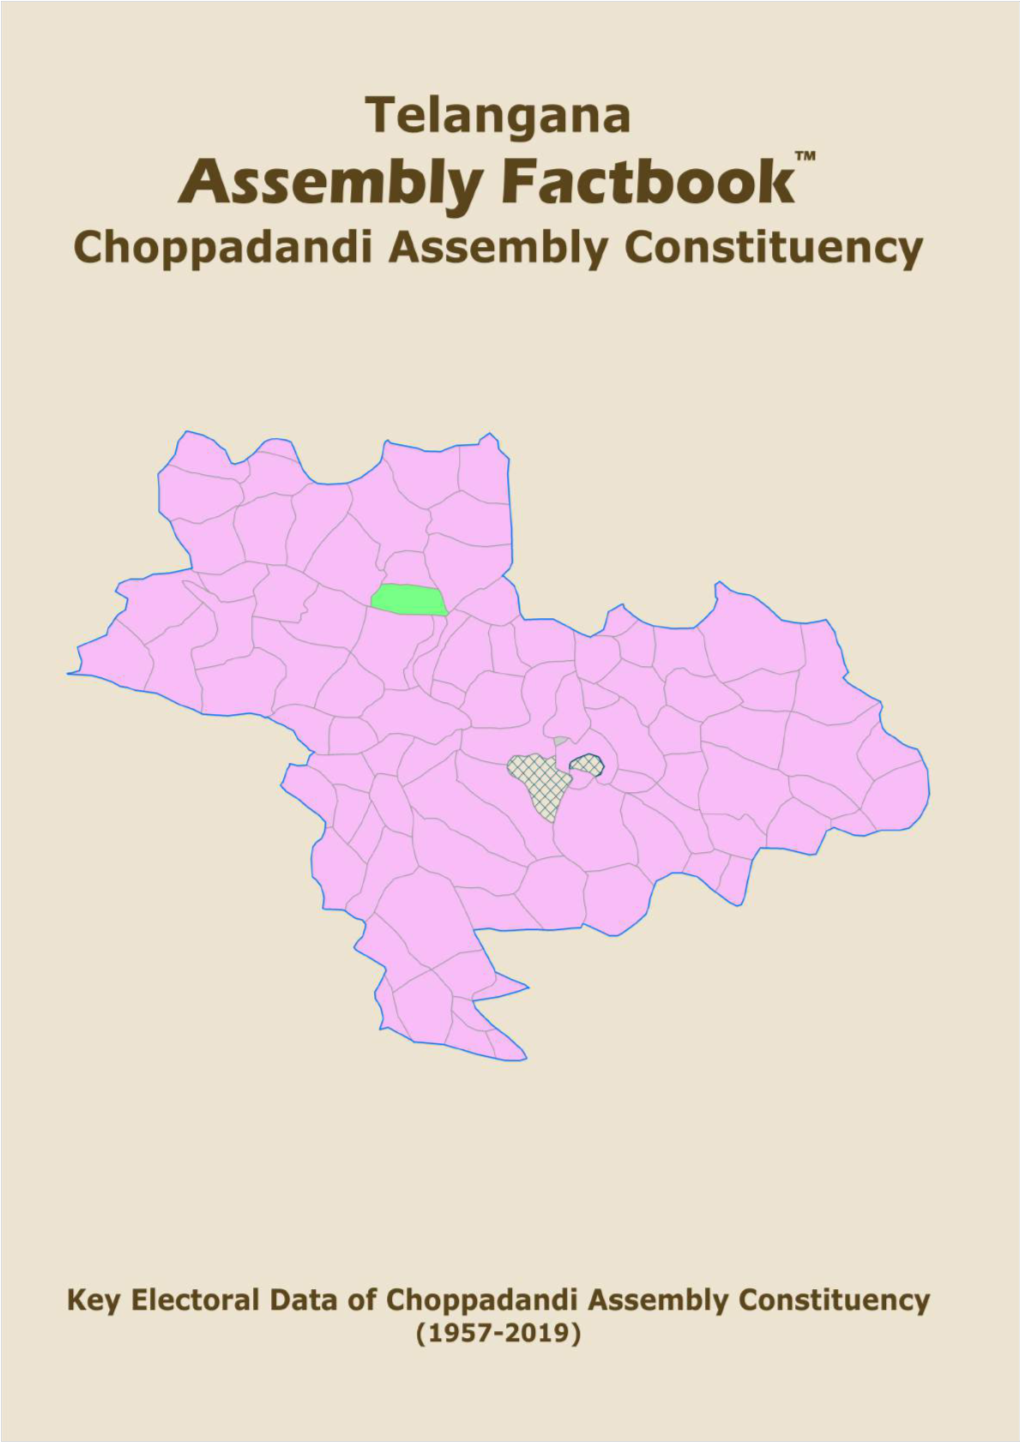 Choppadandi Assembly Telangana Factbook